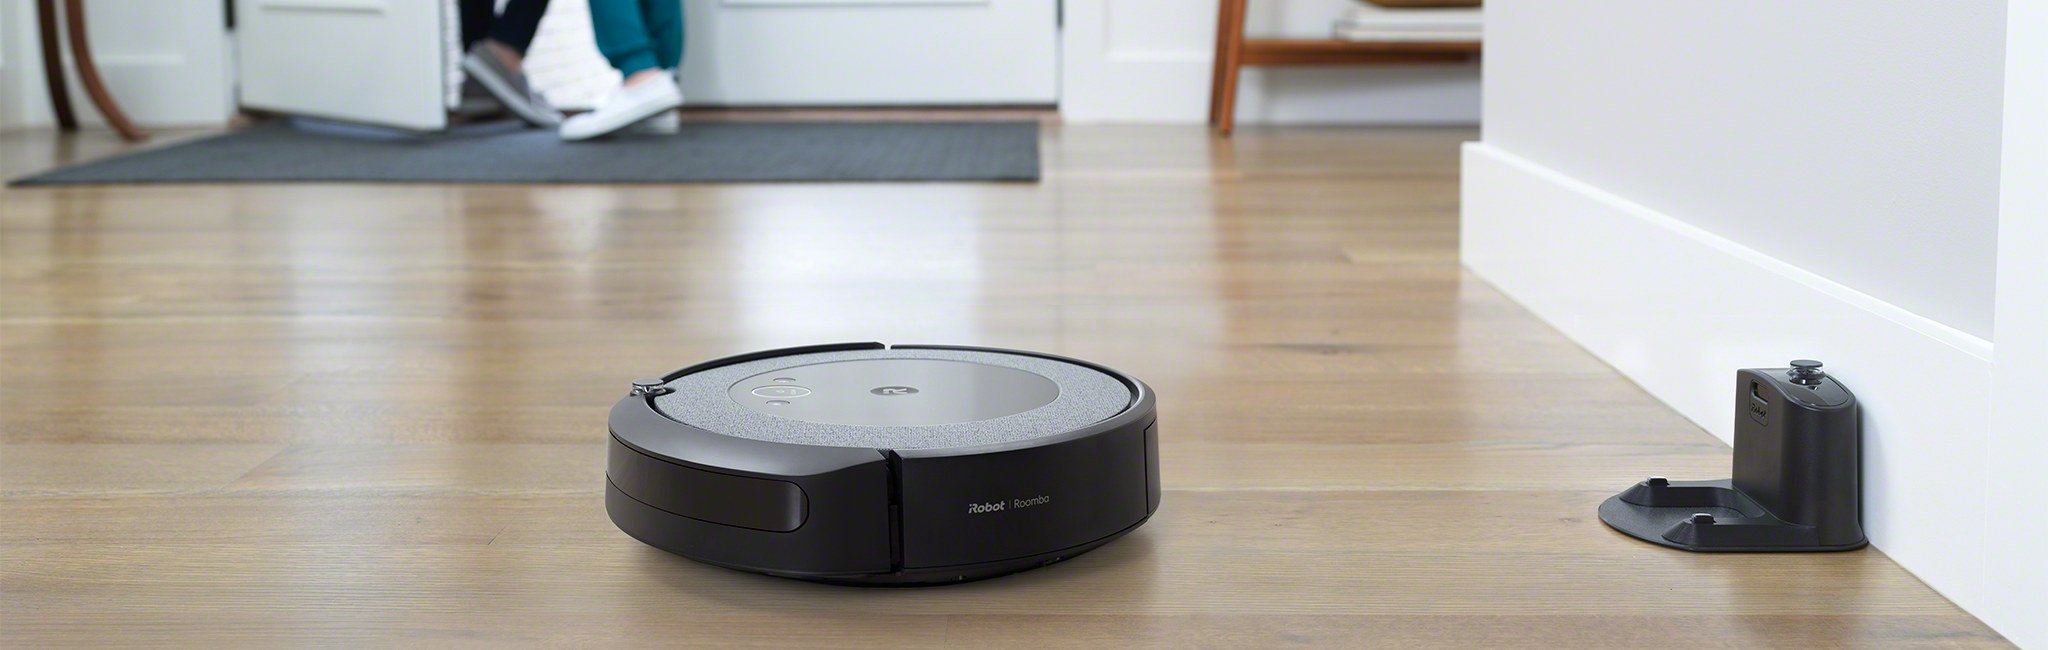 Najnowsze odkurzacze iRobot Roomba dostępne w Polsce